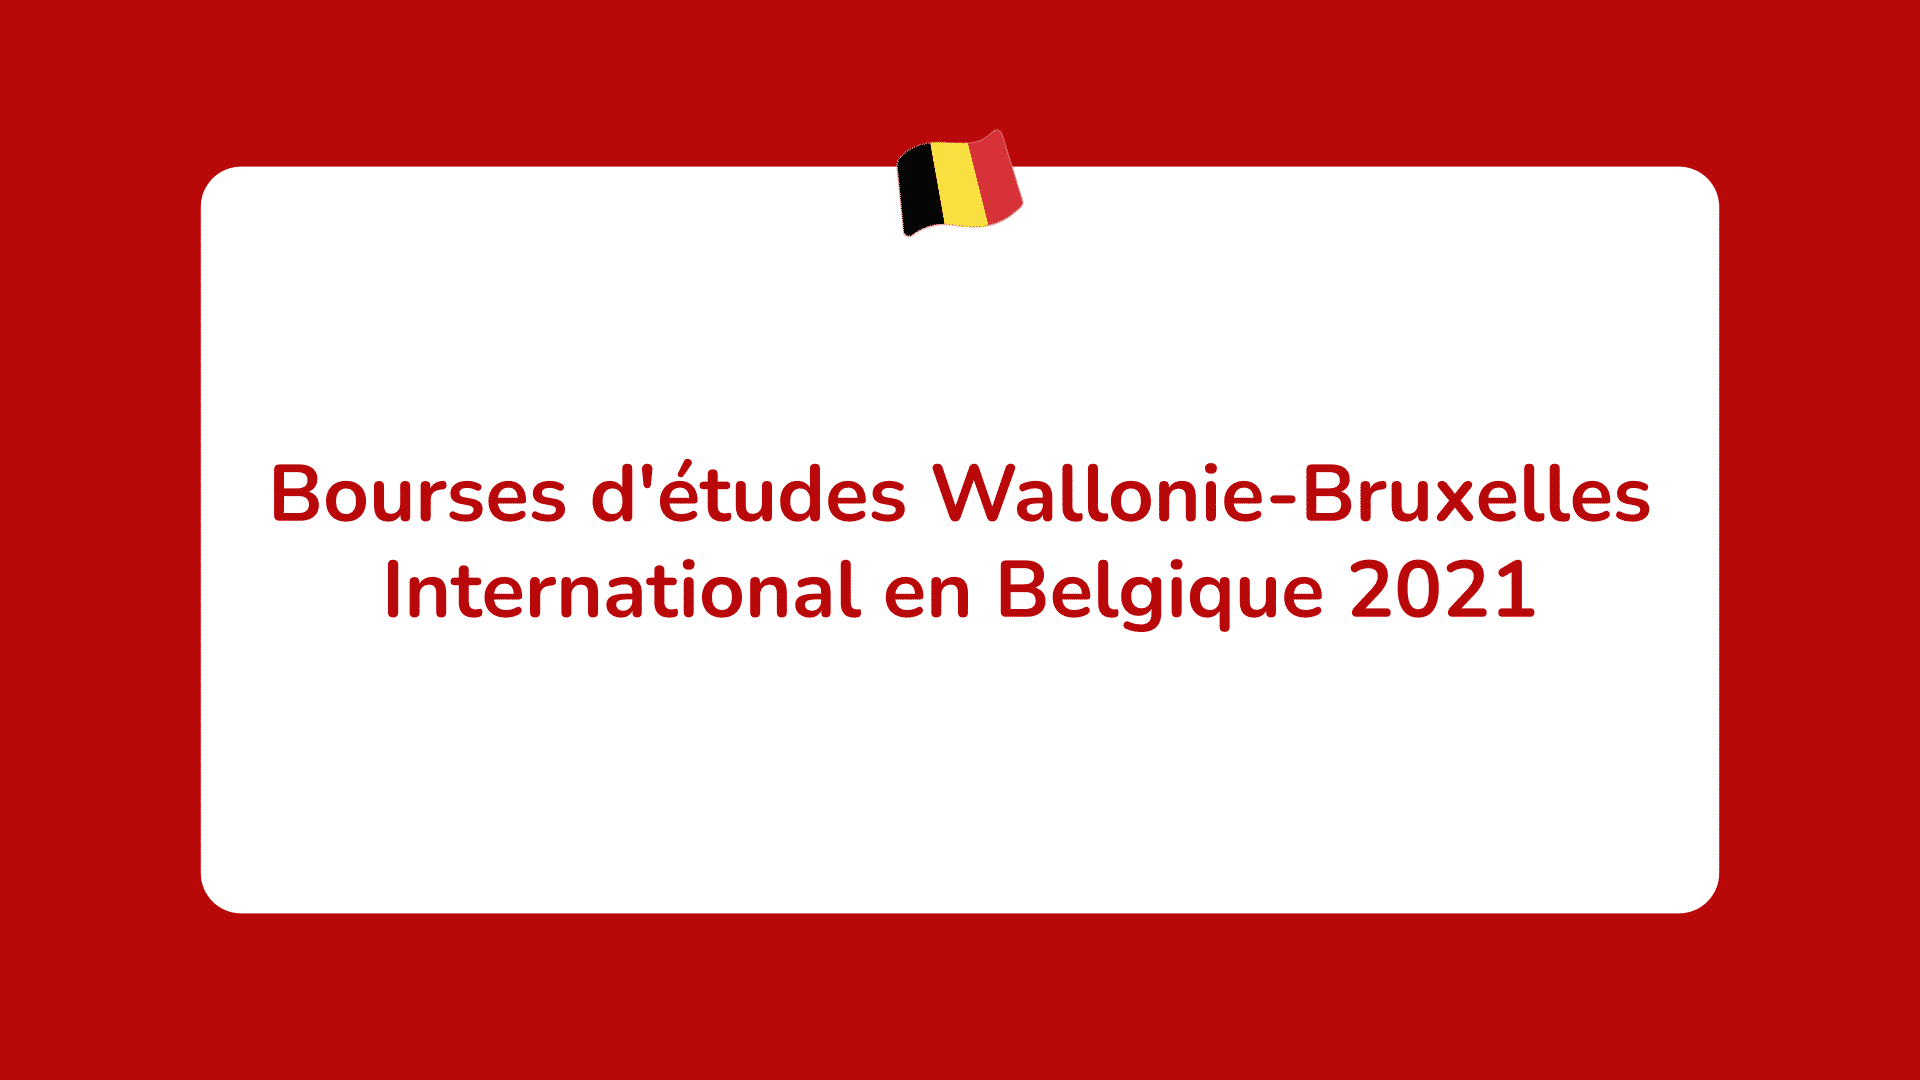 Bourses d'études Wallonie-Bruxelles International